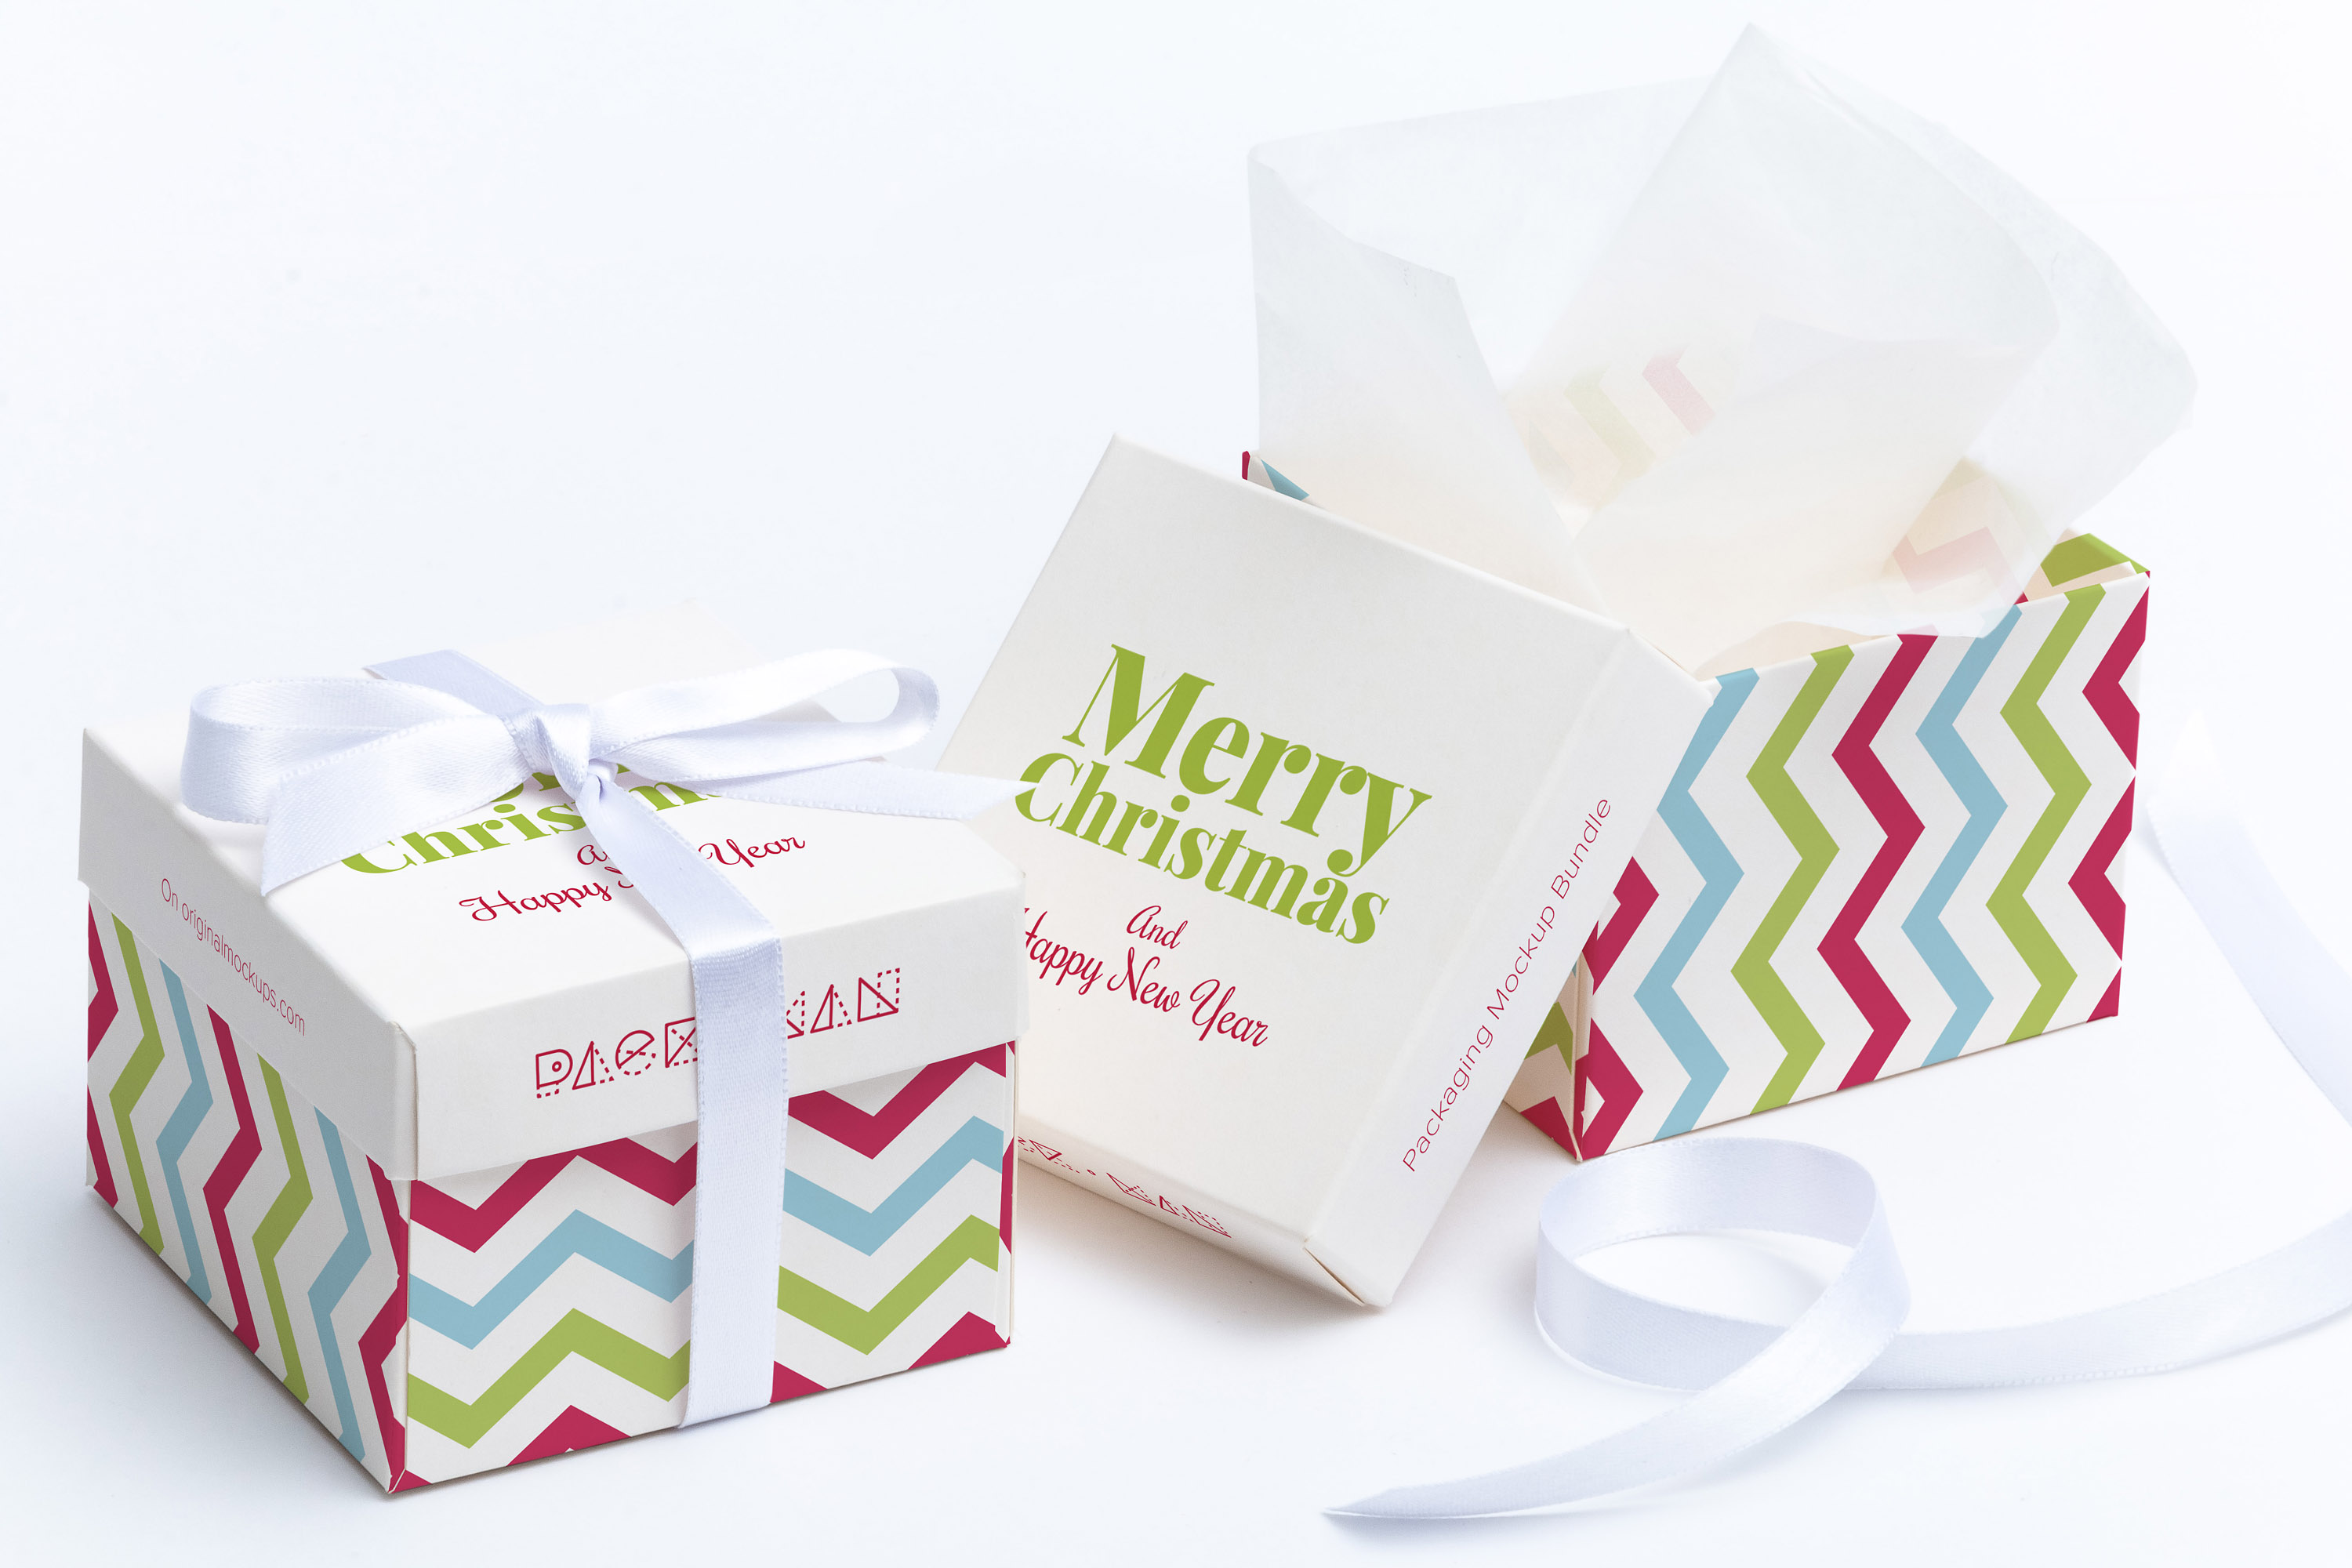 立方体礼品盒包装外观设计效果图样机01 Cube Gift Box Mockup 01插图